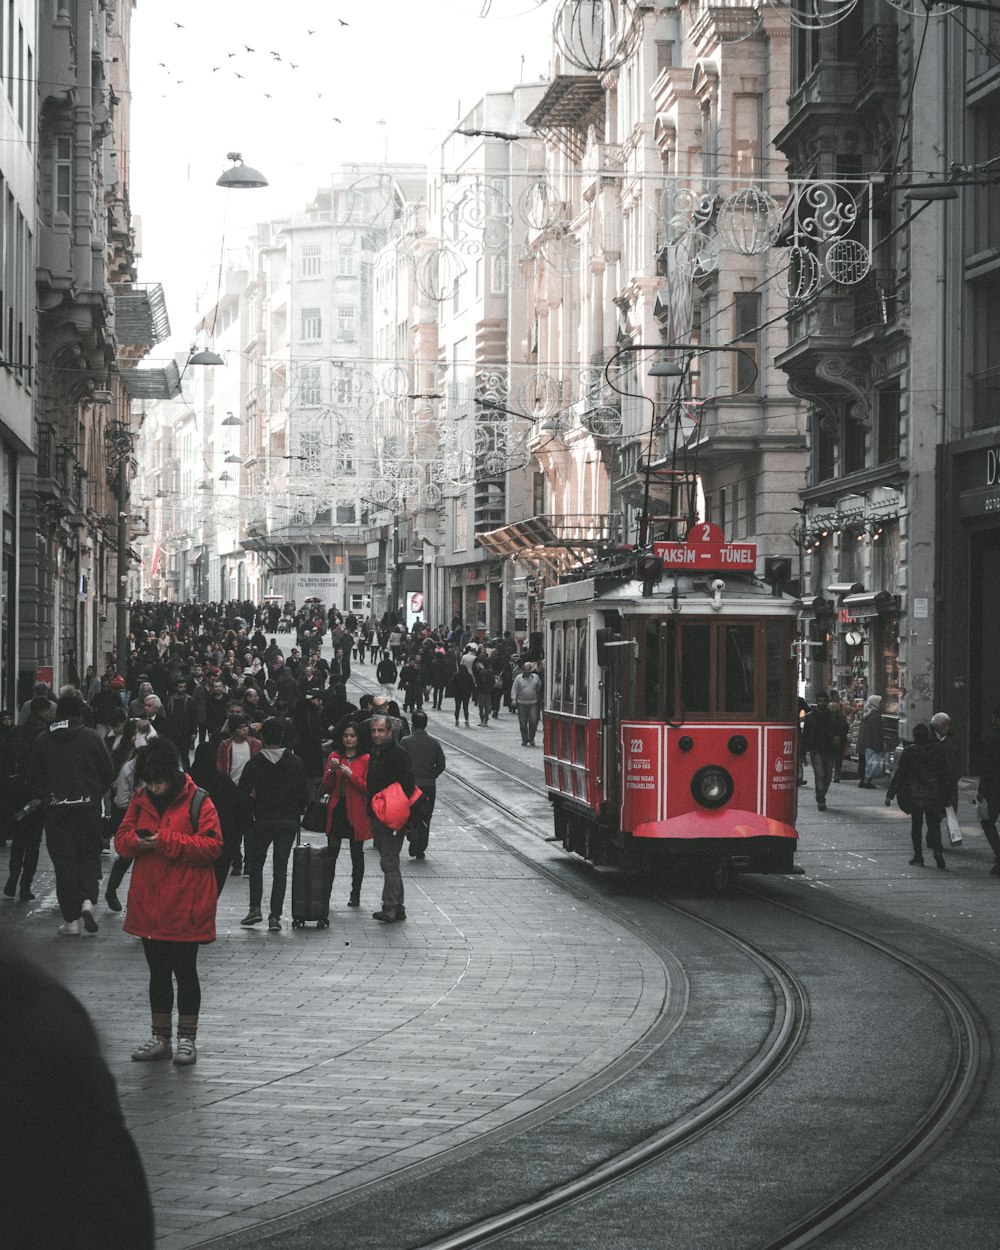 people walking on sidewalk near red tram during daytime